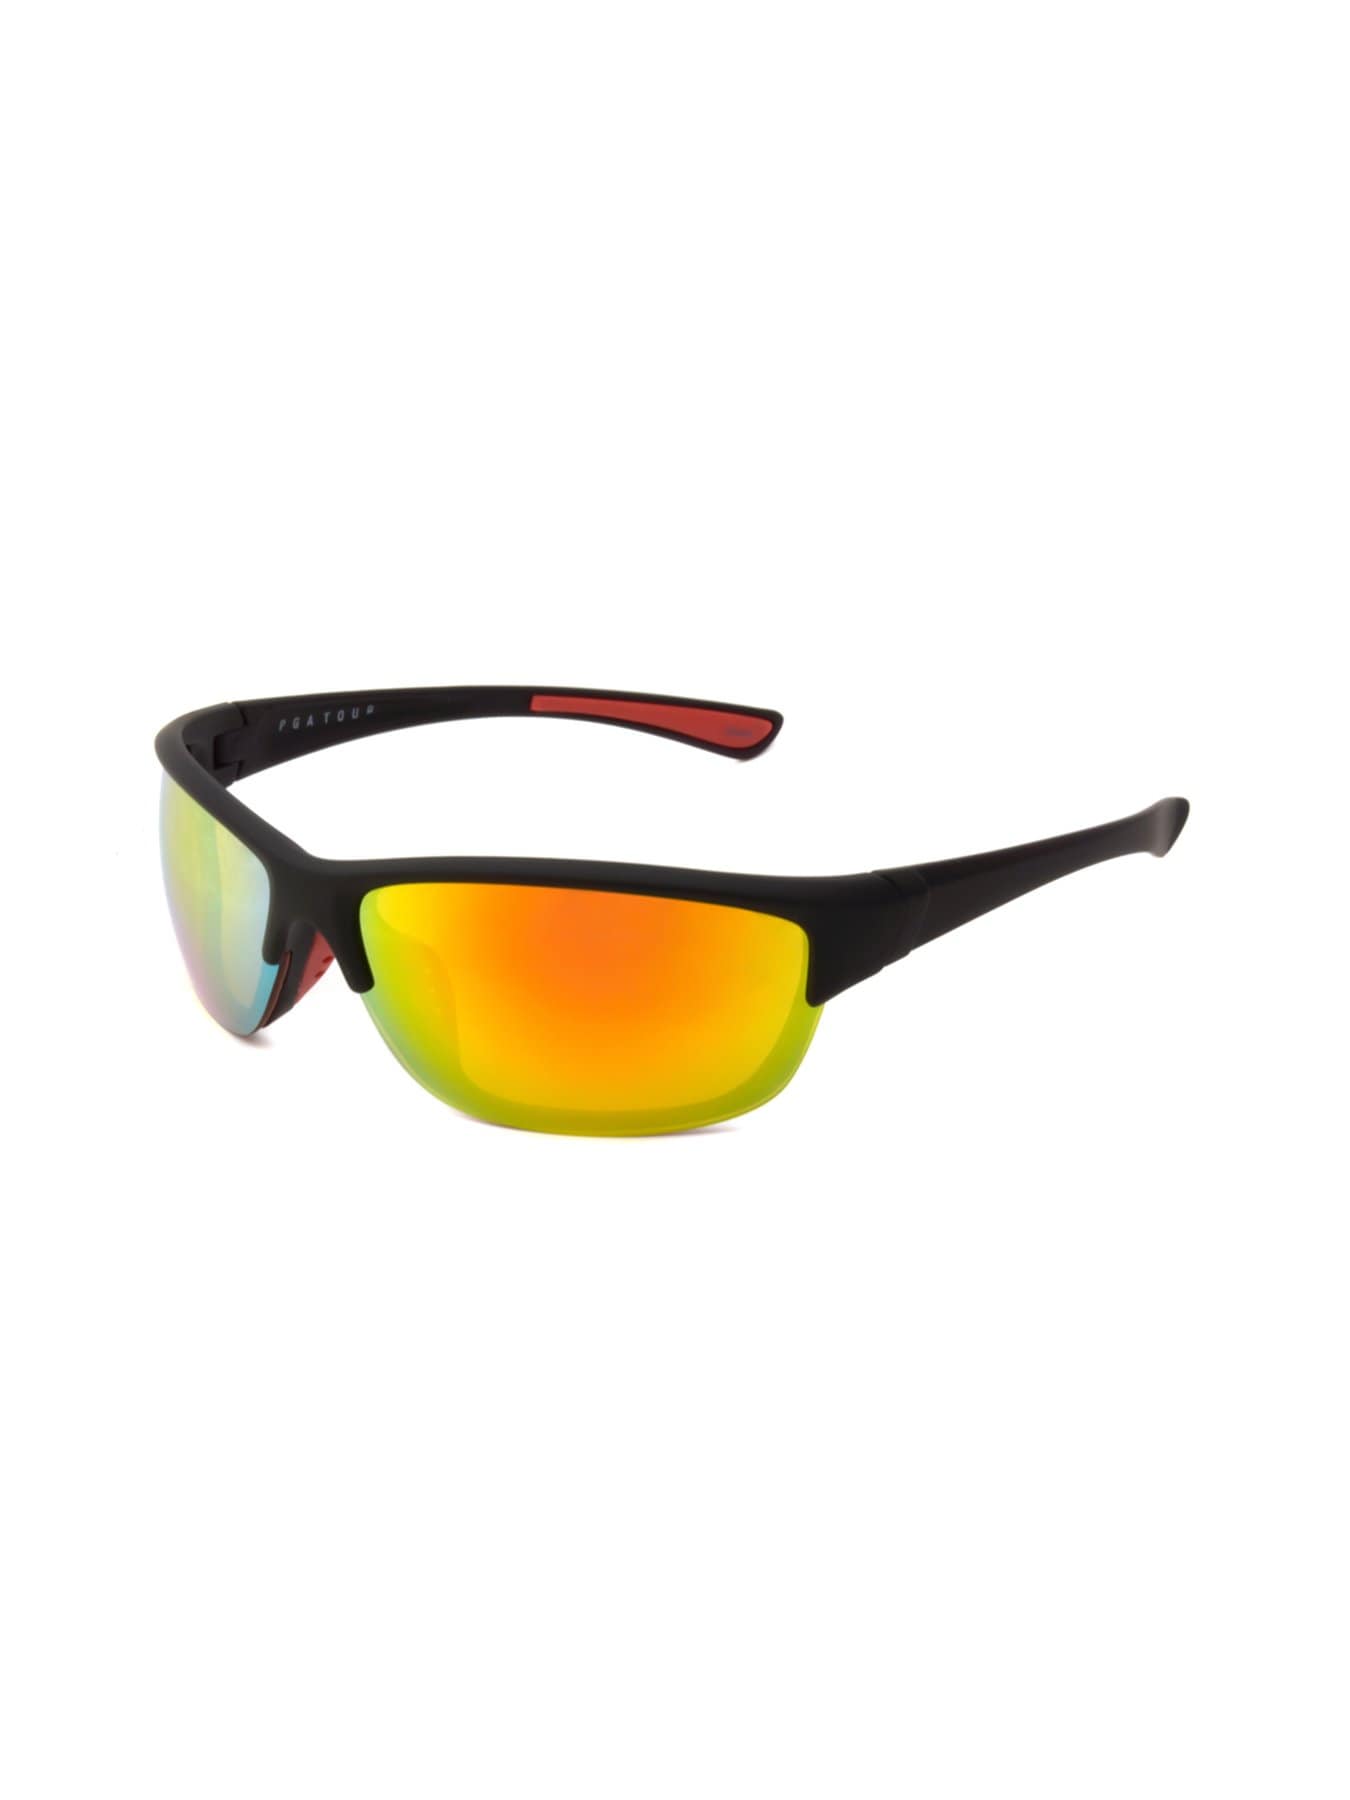 PGA TOUR Apparel Mens Full Frame Sunglasses, Yellow | Golf Apparel Shop